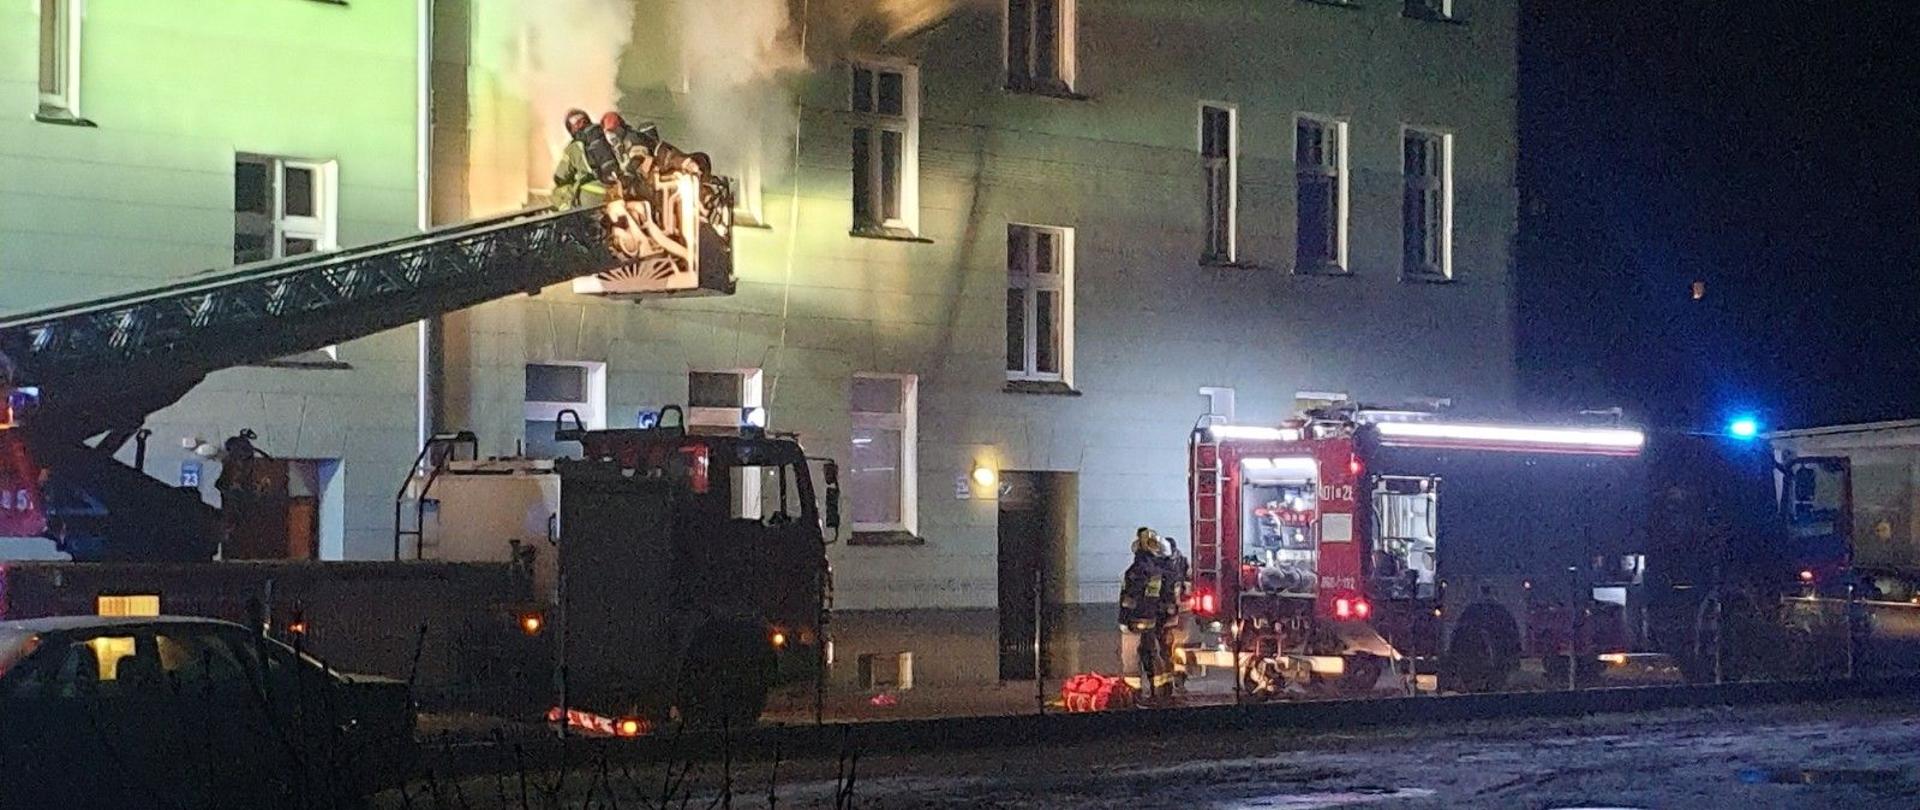 Na zdjęciu widoczne dwa pojazdy pożarnicze w porze nocnej przy pożarze mieszkania w budynku wielorodzinnym w Brzegu. Z dwóch okien mieszkania na 1 piętrze wydobywa się gęsty dym.